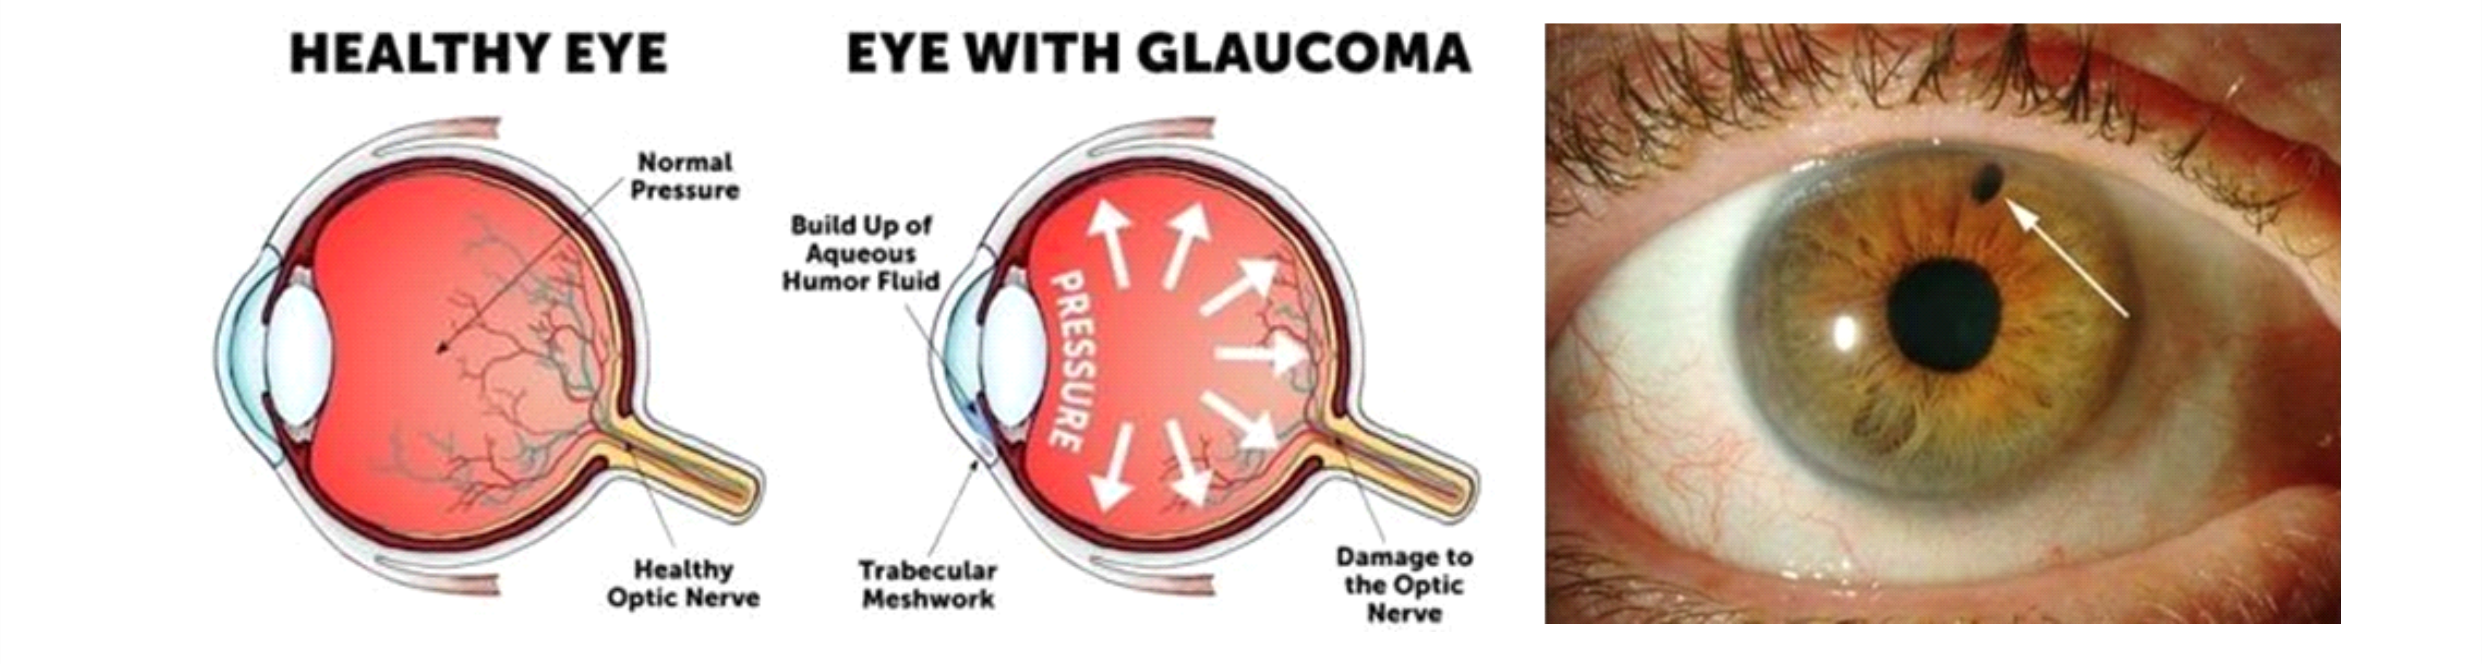 glaucoma-eye